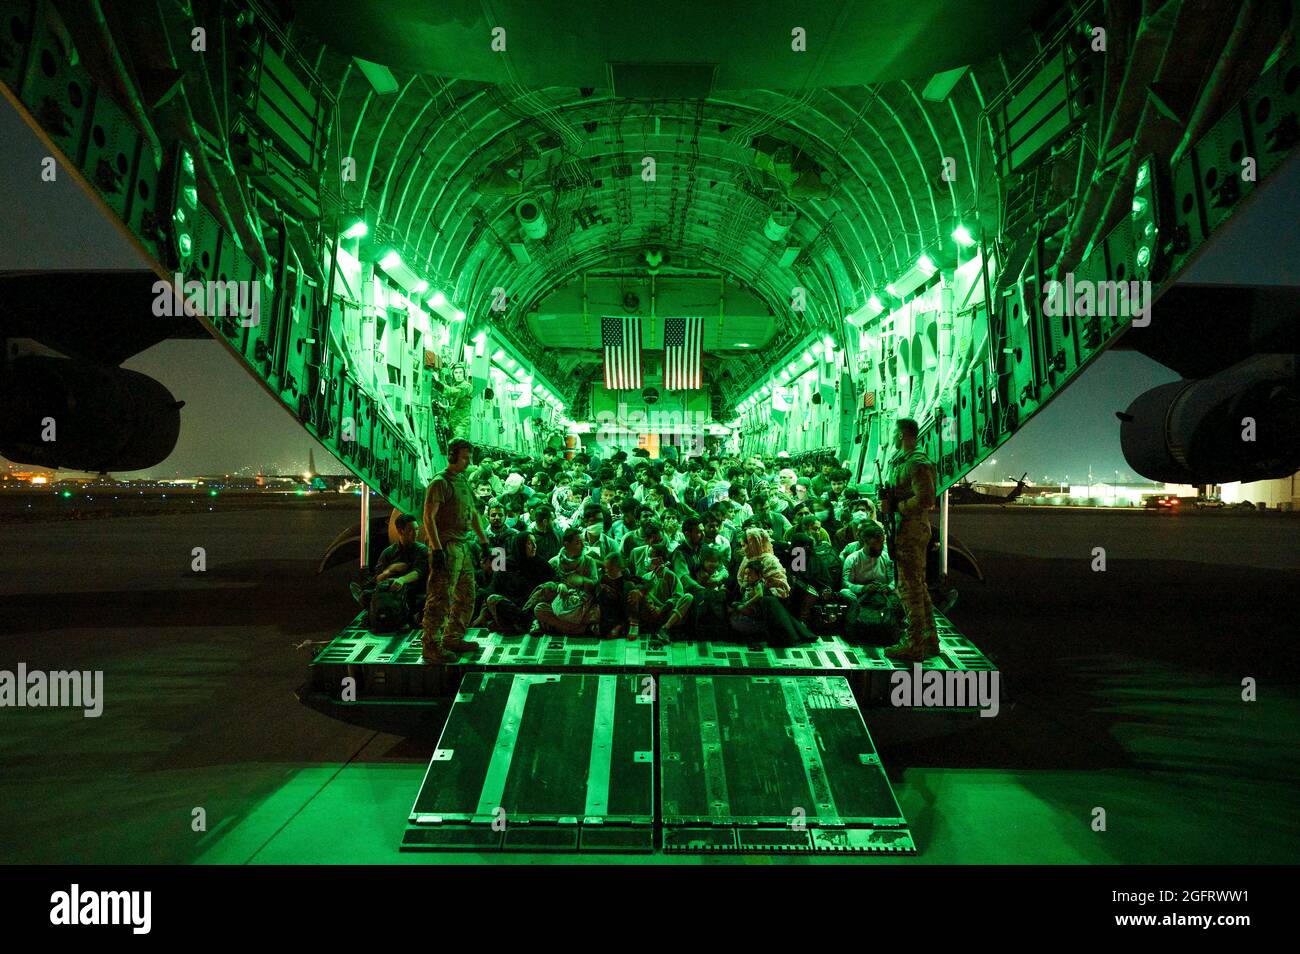 Un équipage de la Force aérienne des États-Unis, affecté au 816e Escadron de transport aérien expéditionnaire, aide les évacués qualifiés à bord d'un avion C-17 Globemaster III de la Force aérienne des États-Unis à l'appui de l'évacuation en Afghanistan à l'aéroport international Hamid Karzaï, en Afghanistan, le 21 août 2021. Le ministère de la Défense s'est engagé à appuyer le département d'État des États-Unis dans le départ du personnel civil américain et allié d'Afghanistan et à évacuer les alliés afghans en toute sécurité. (É.-U. Photo de la Force aérienne par Airman Taylor Crul via American PhotoArchive/Alamy) Banque D'Images